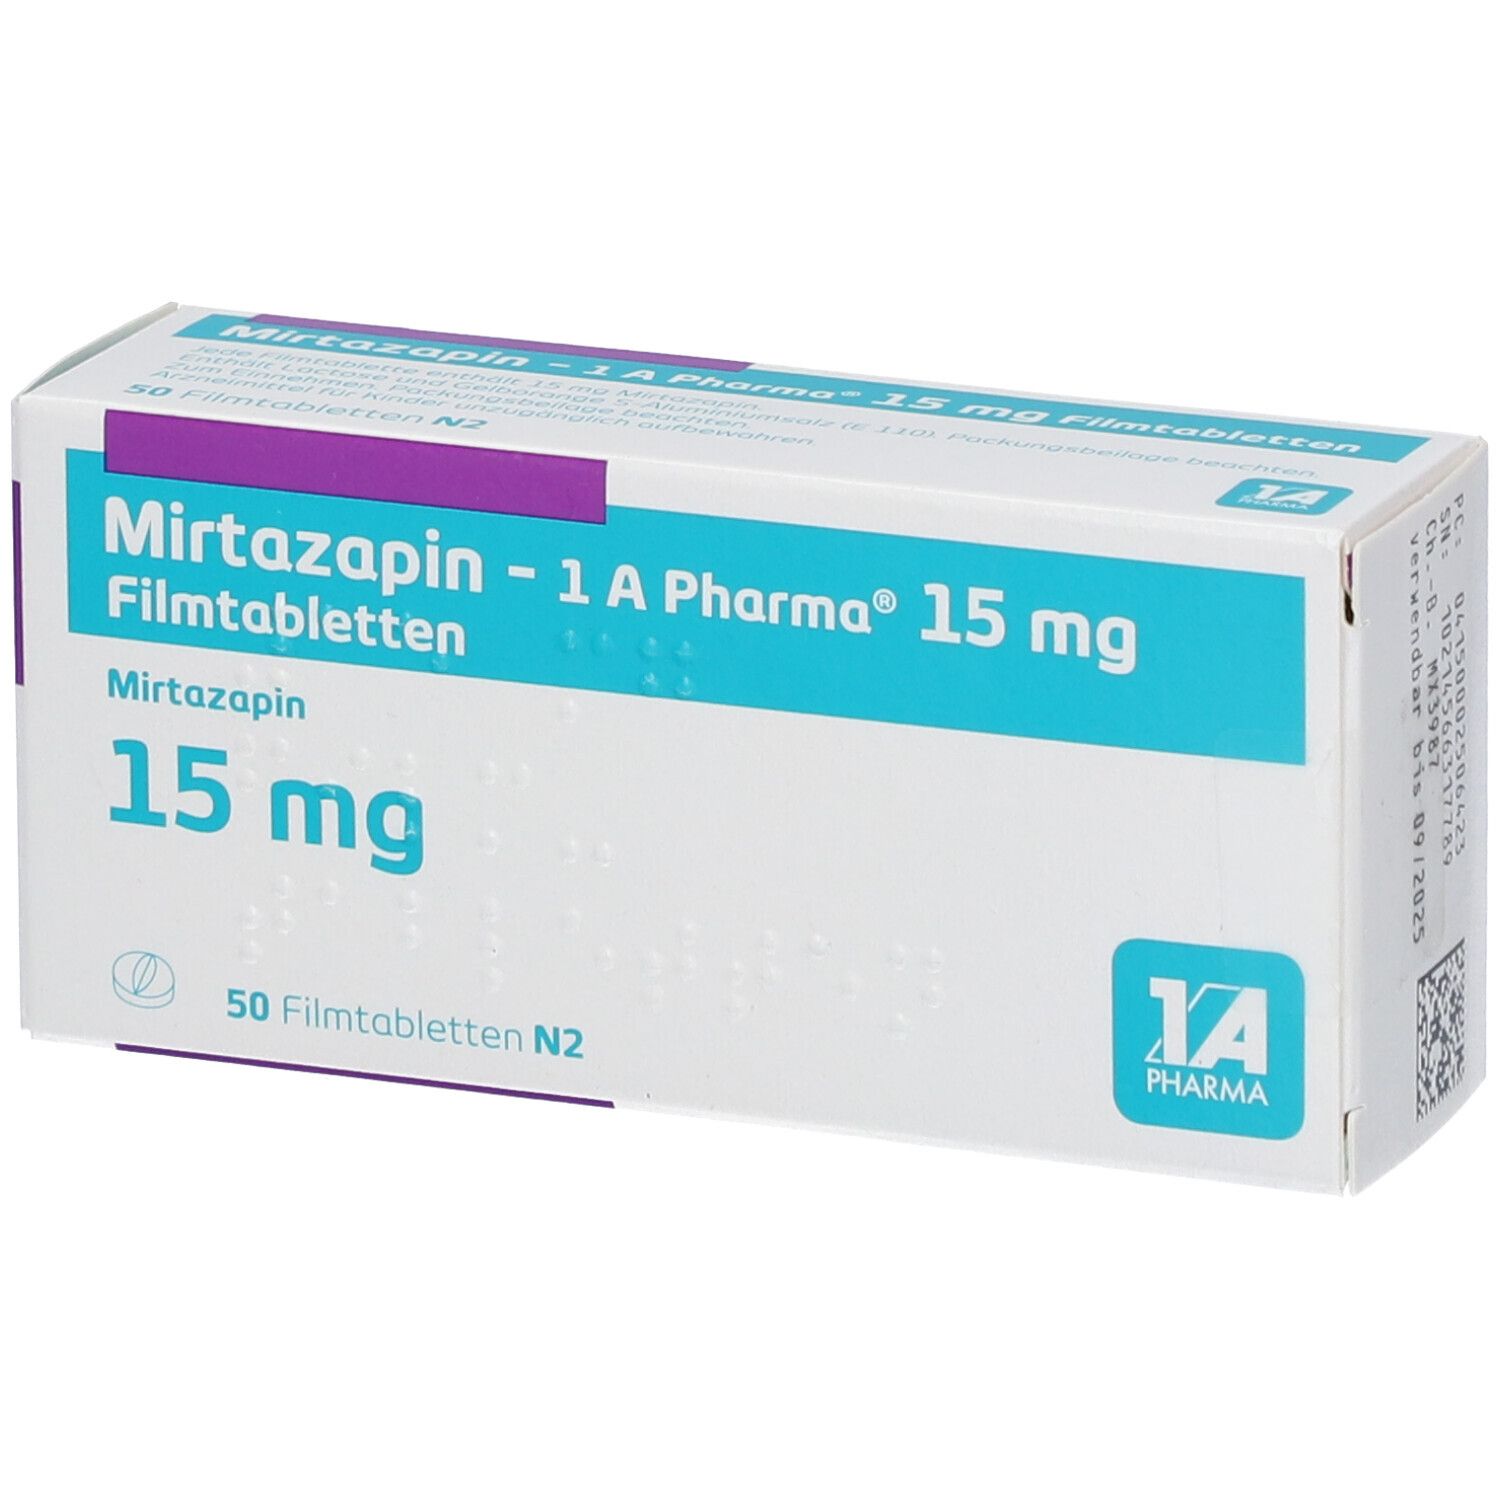 Tödlich 15 mg überdosis mirtazapin In welcher